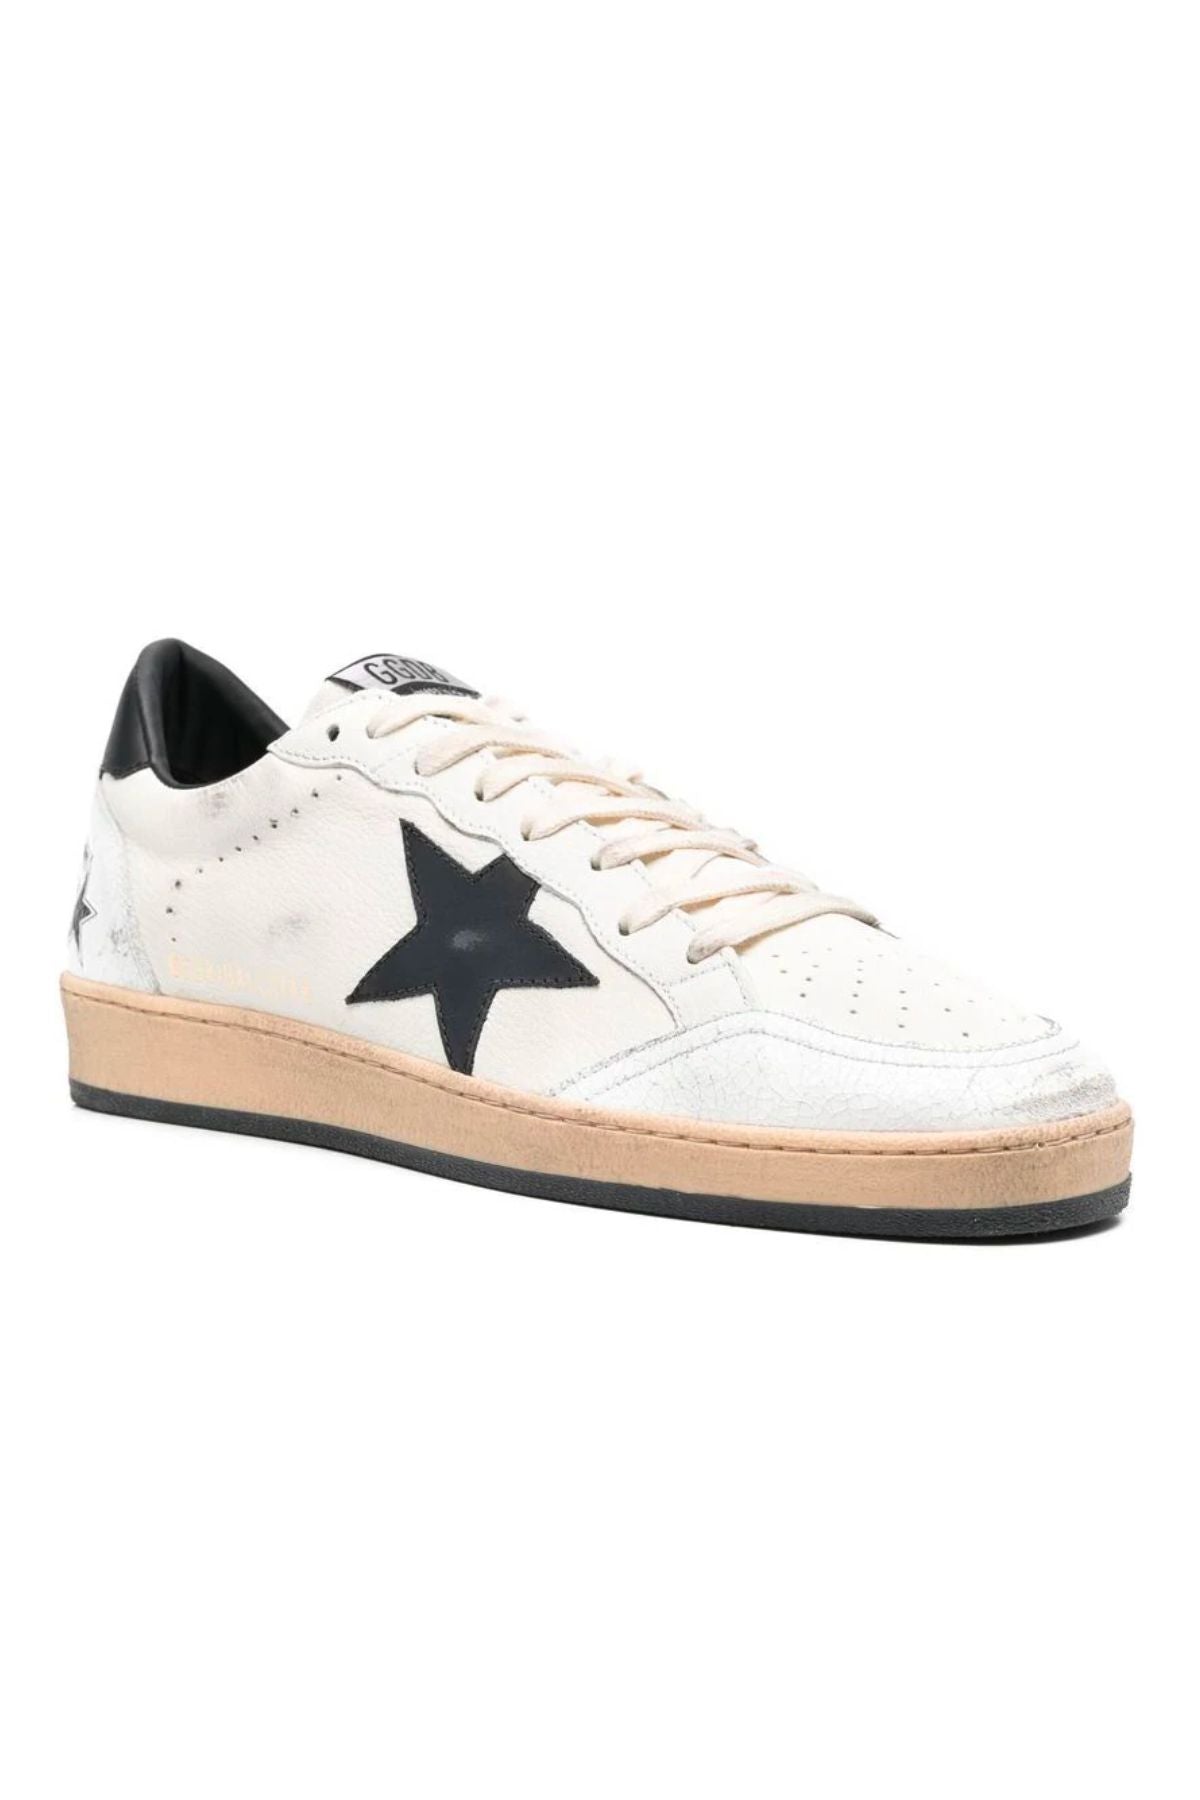 Golden Goose Ball Star Sneaker - White/ Black